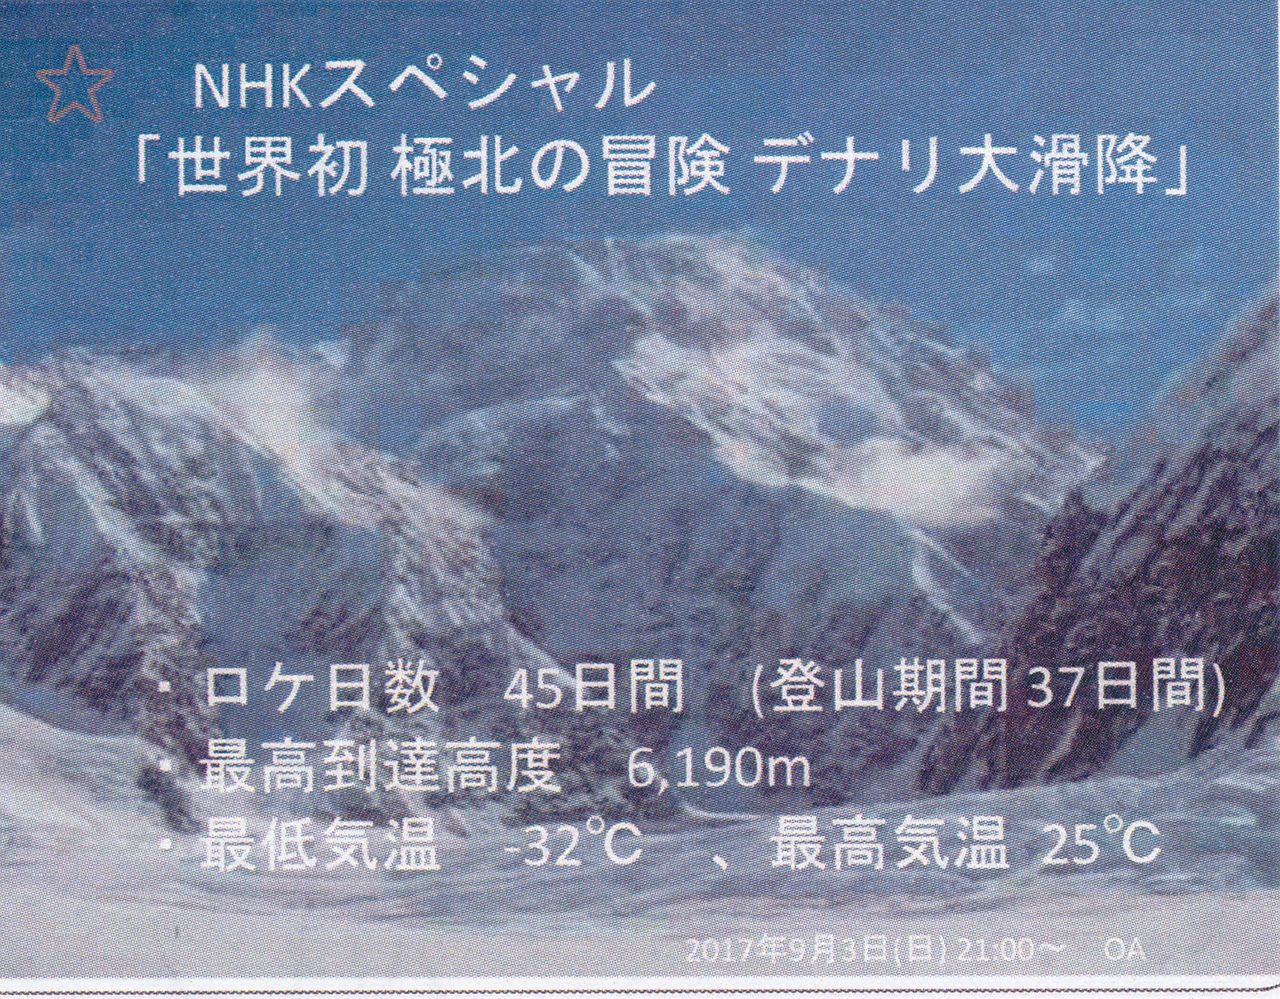 デナリ山 旧マッキンレー スキー大滑降の放映 日本山岳会福島支部のブログ